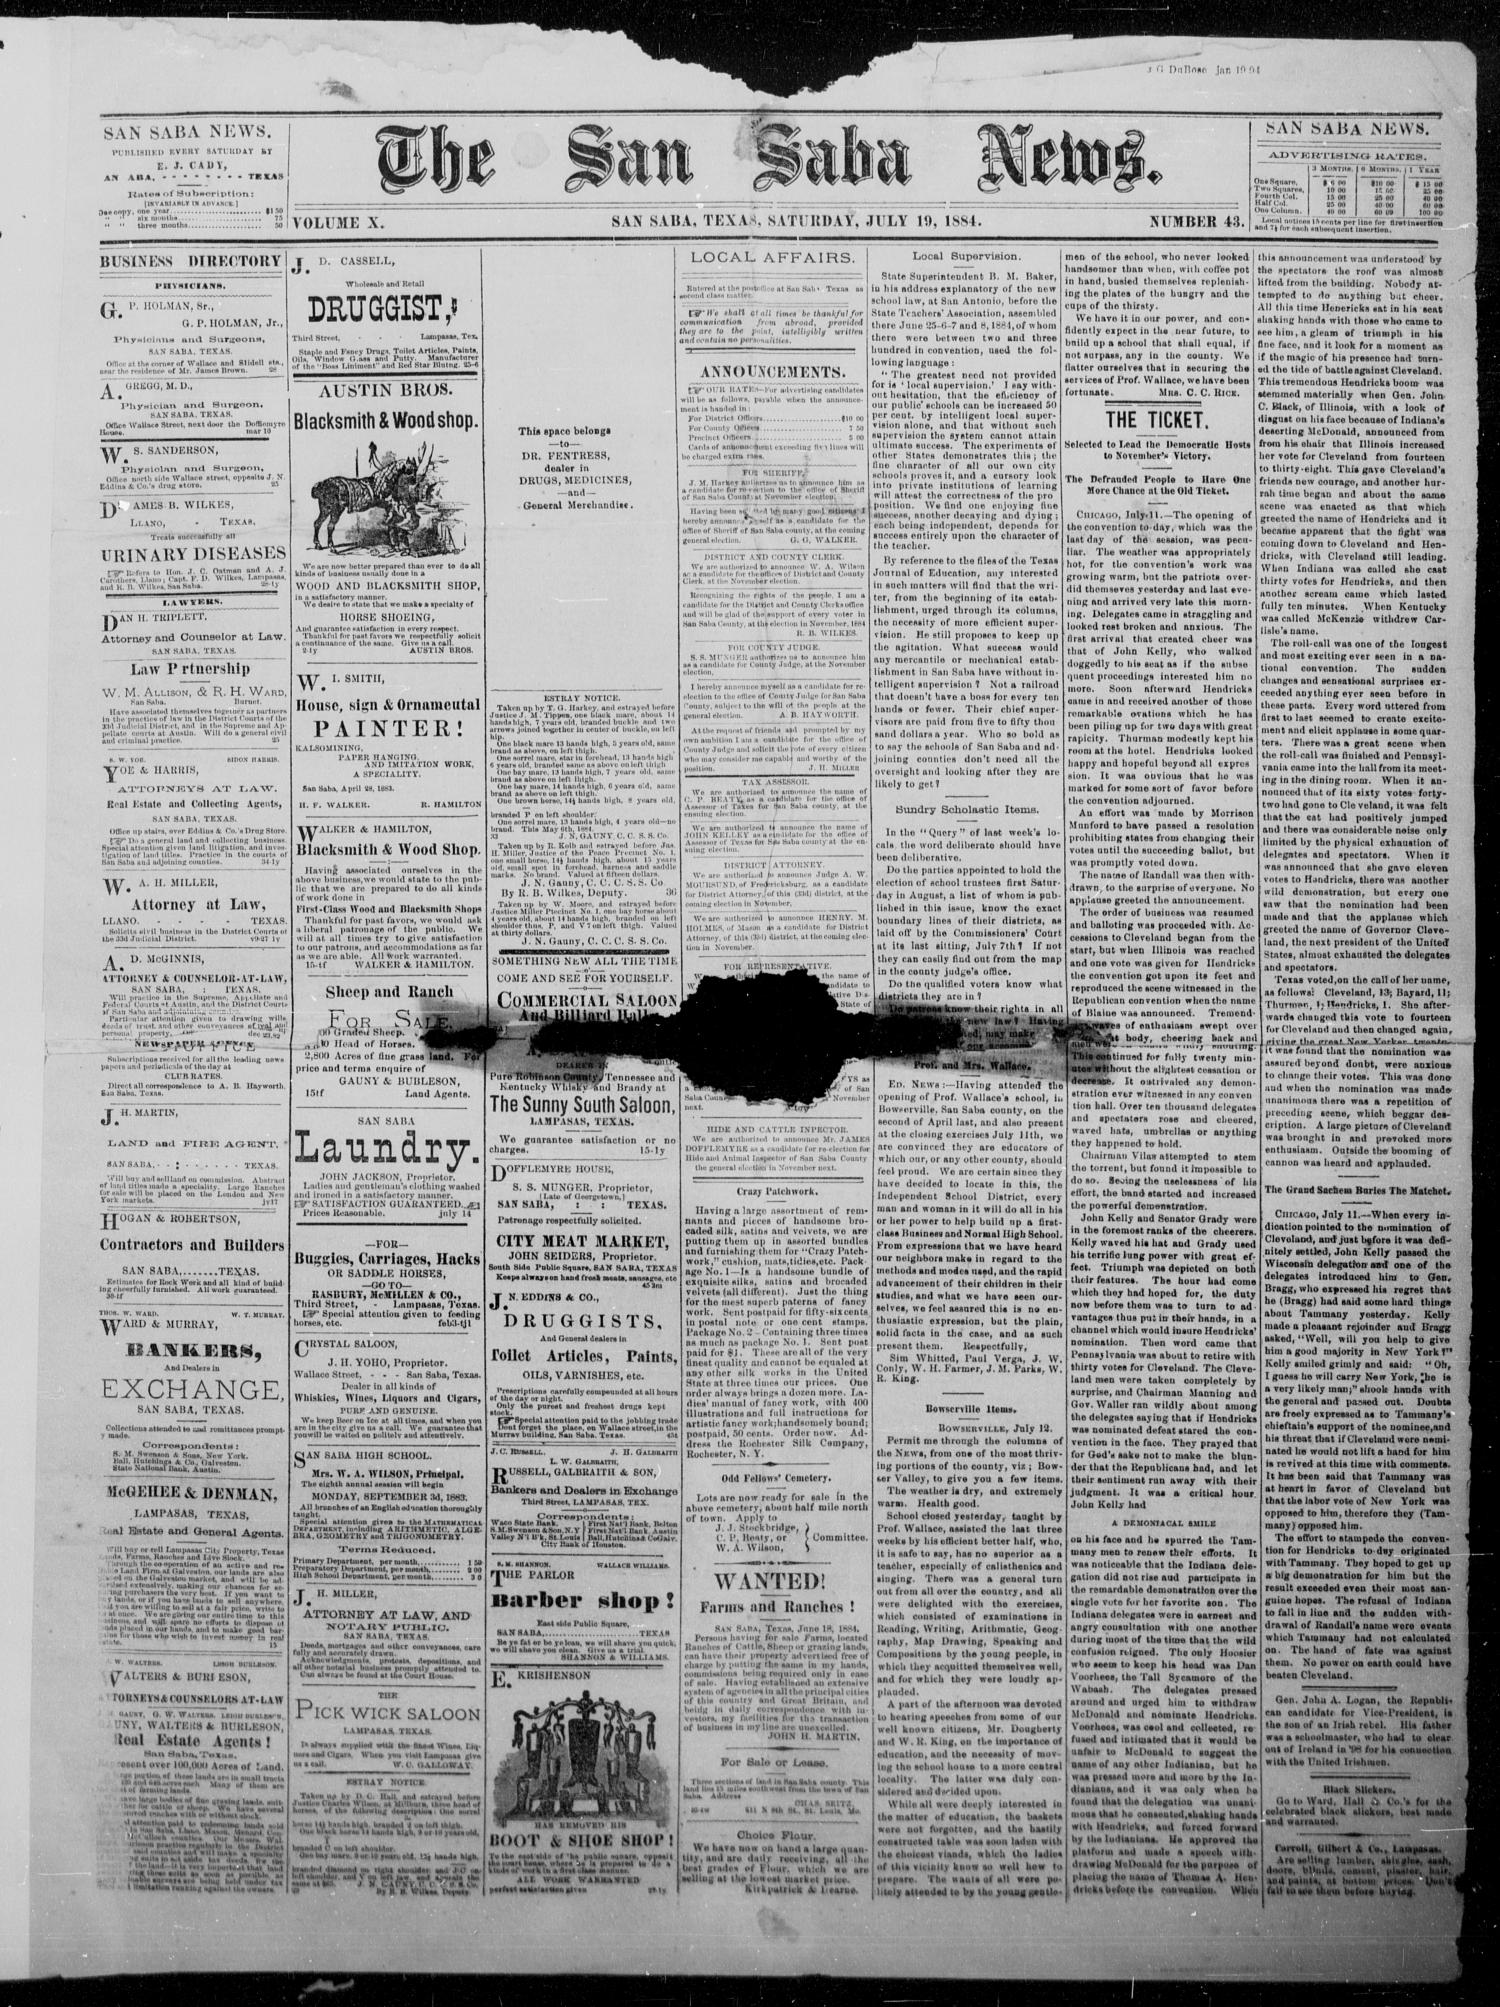 The San Saba News. (San Saba, Tex.), Vol. 10, No. 43, Ed. 1, Saturday, July 19, 1884
                                                
                                                    [Sequence #]: 1 of 4
                                                